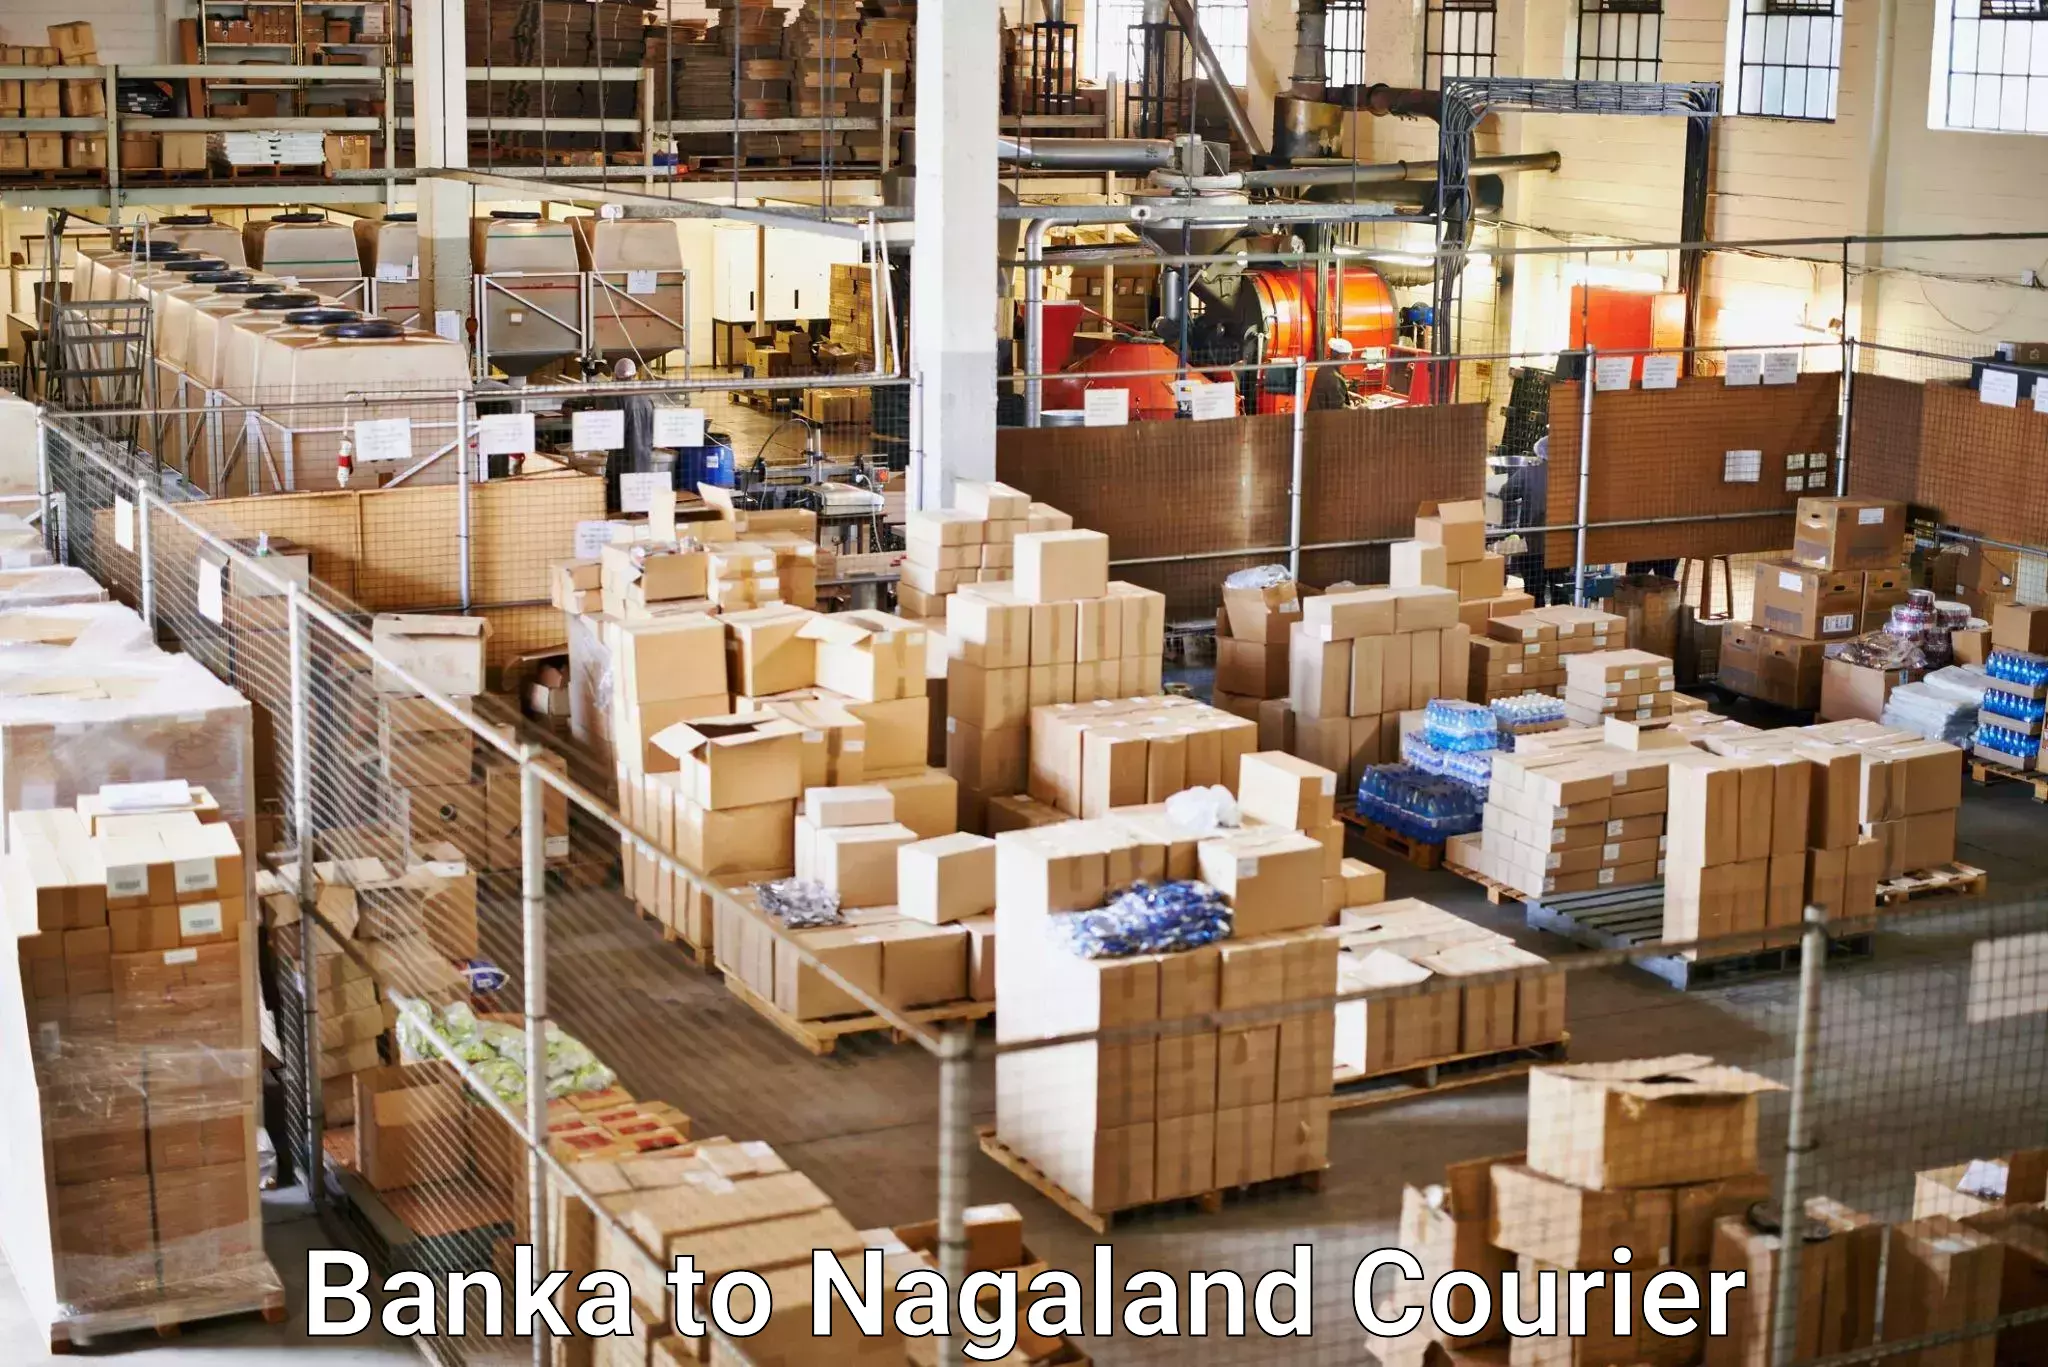 Seamless shipping service Banka to NIT Nagaland